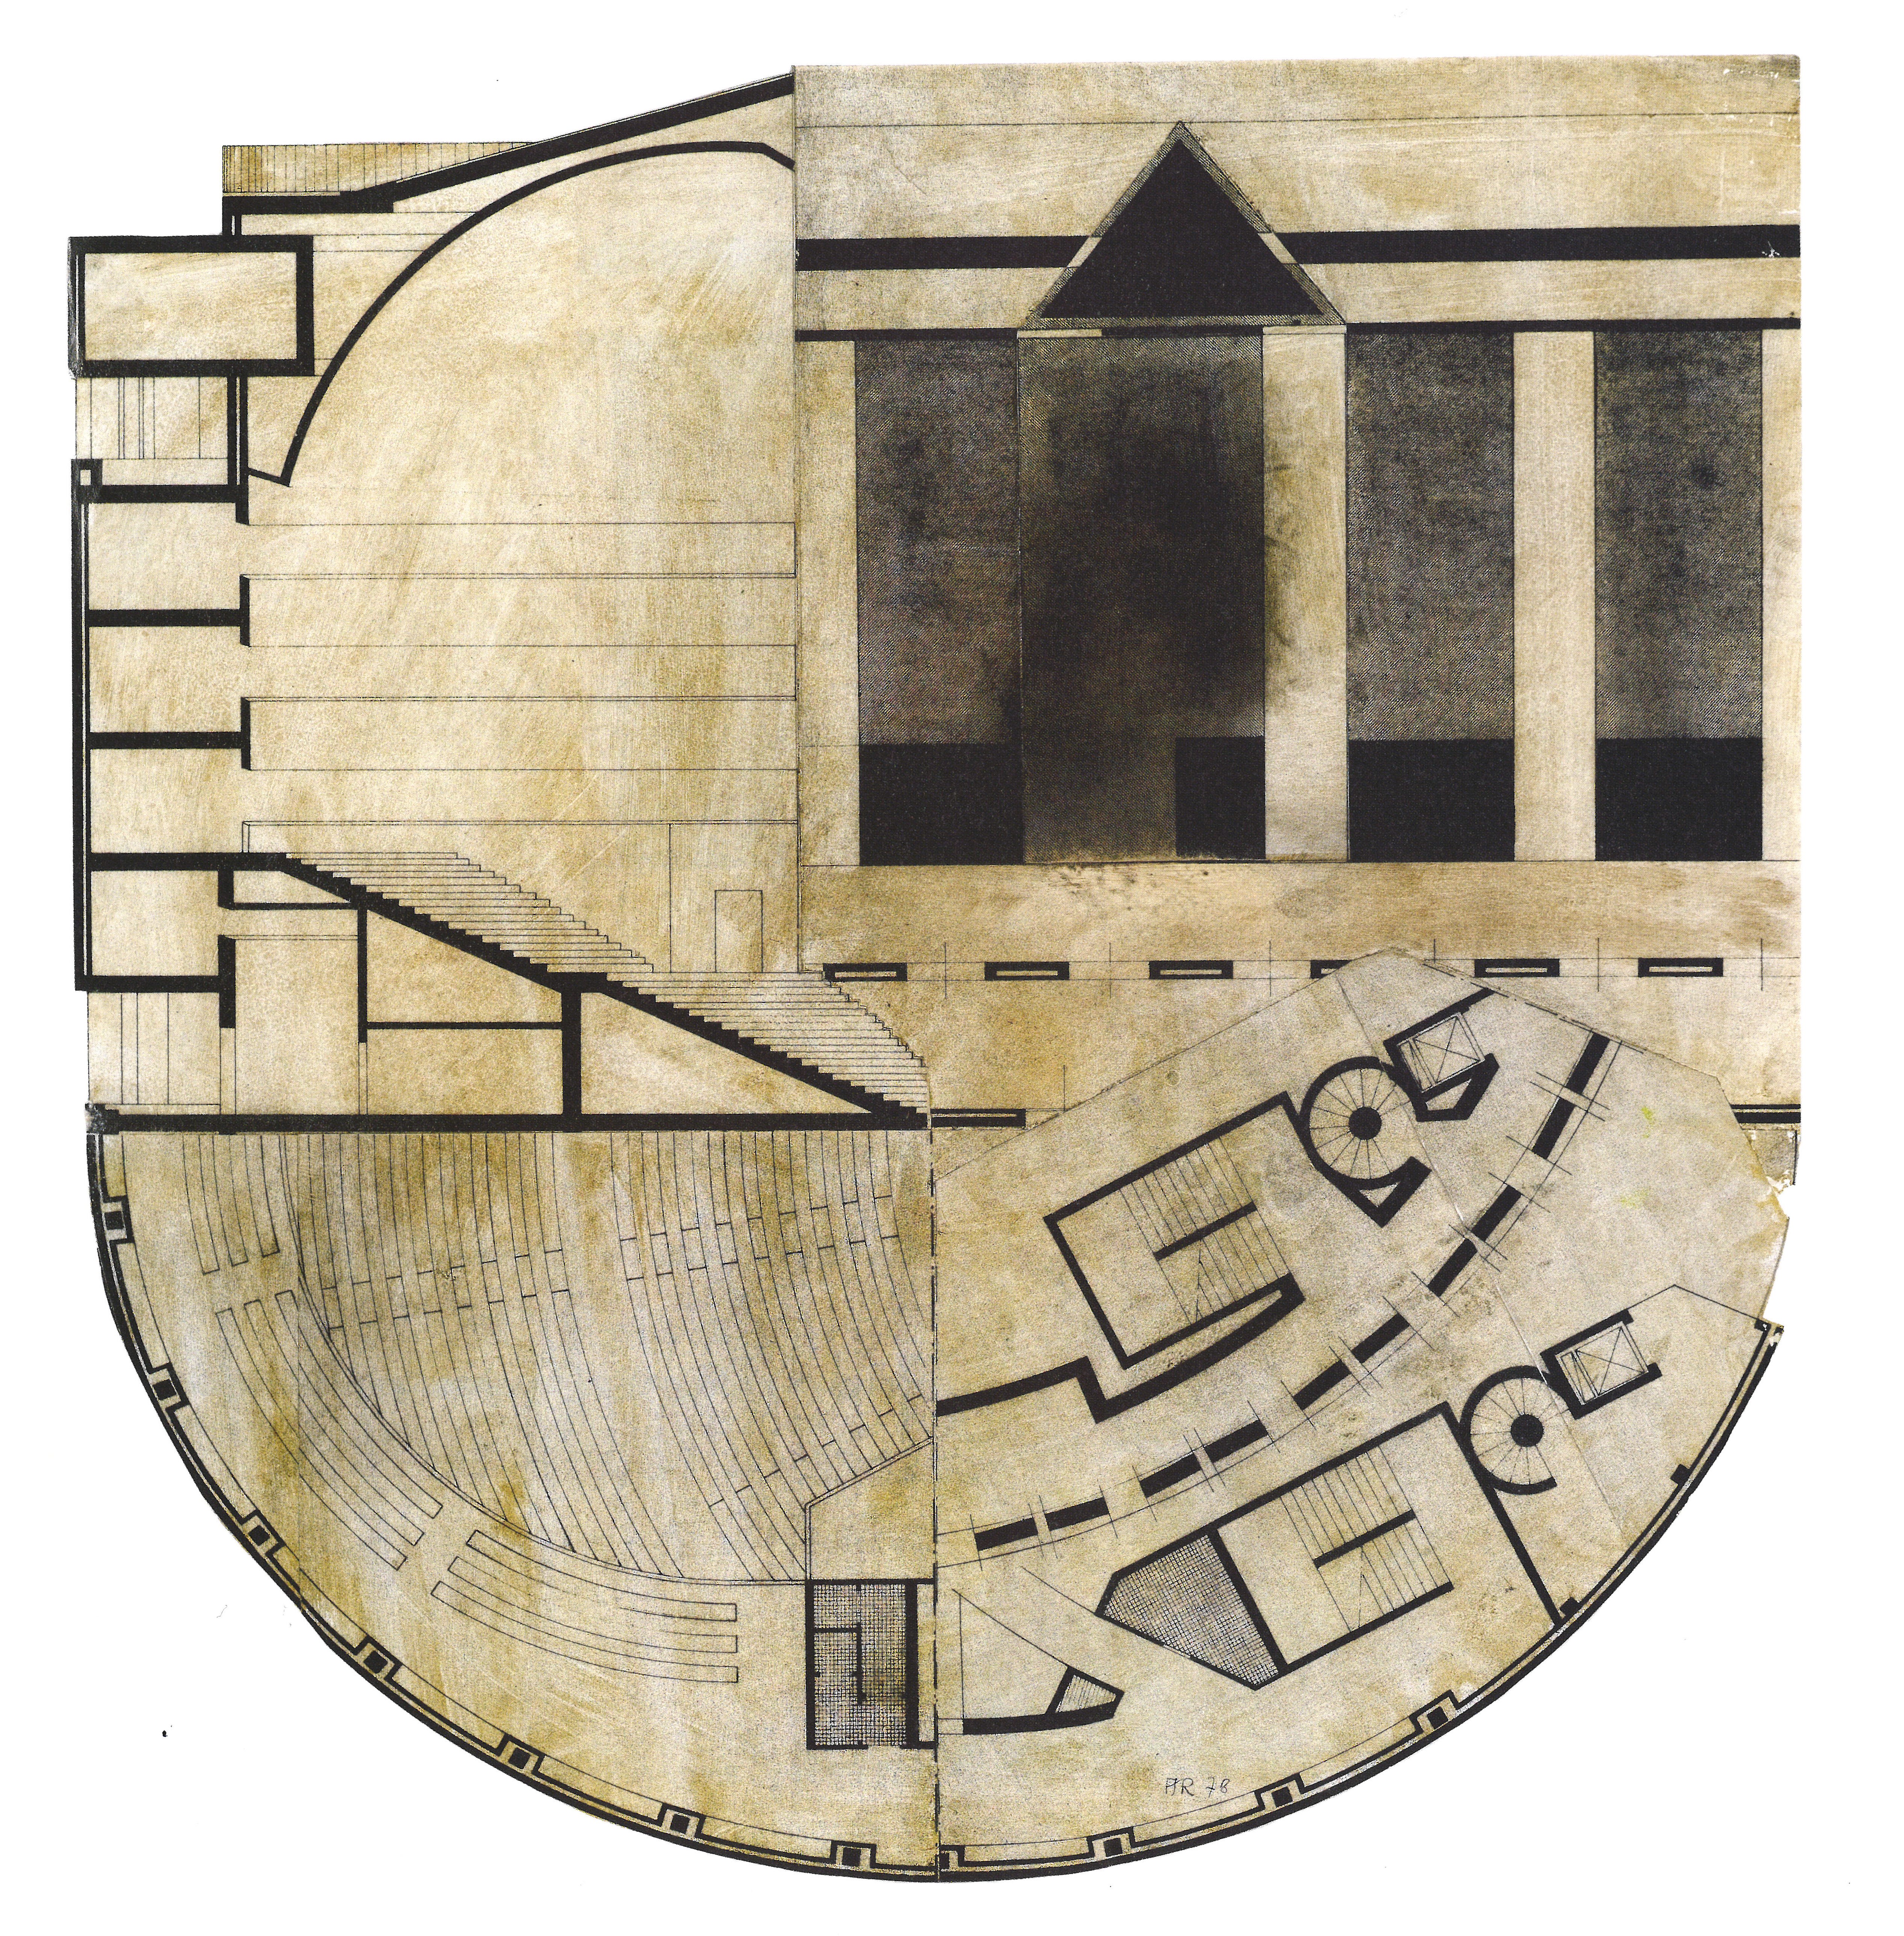 Aldo Rossi: The Architecture of the City | Medium